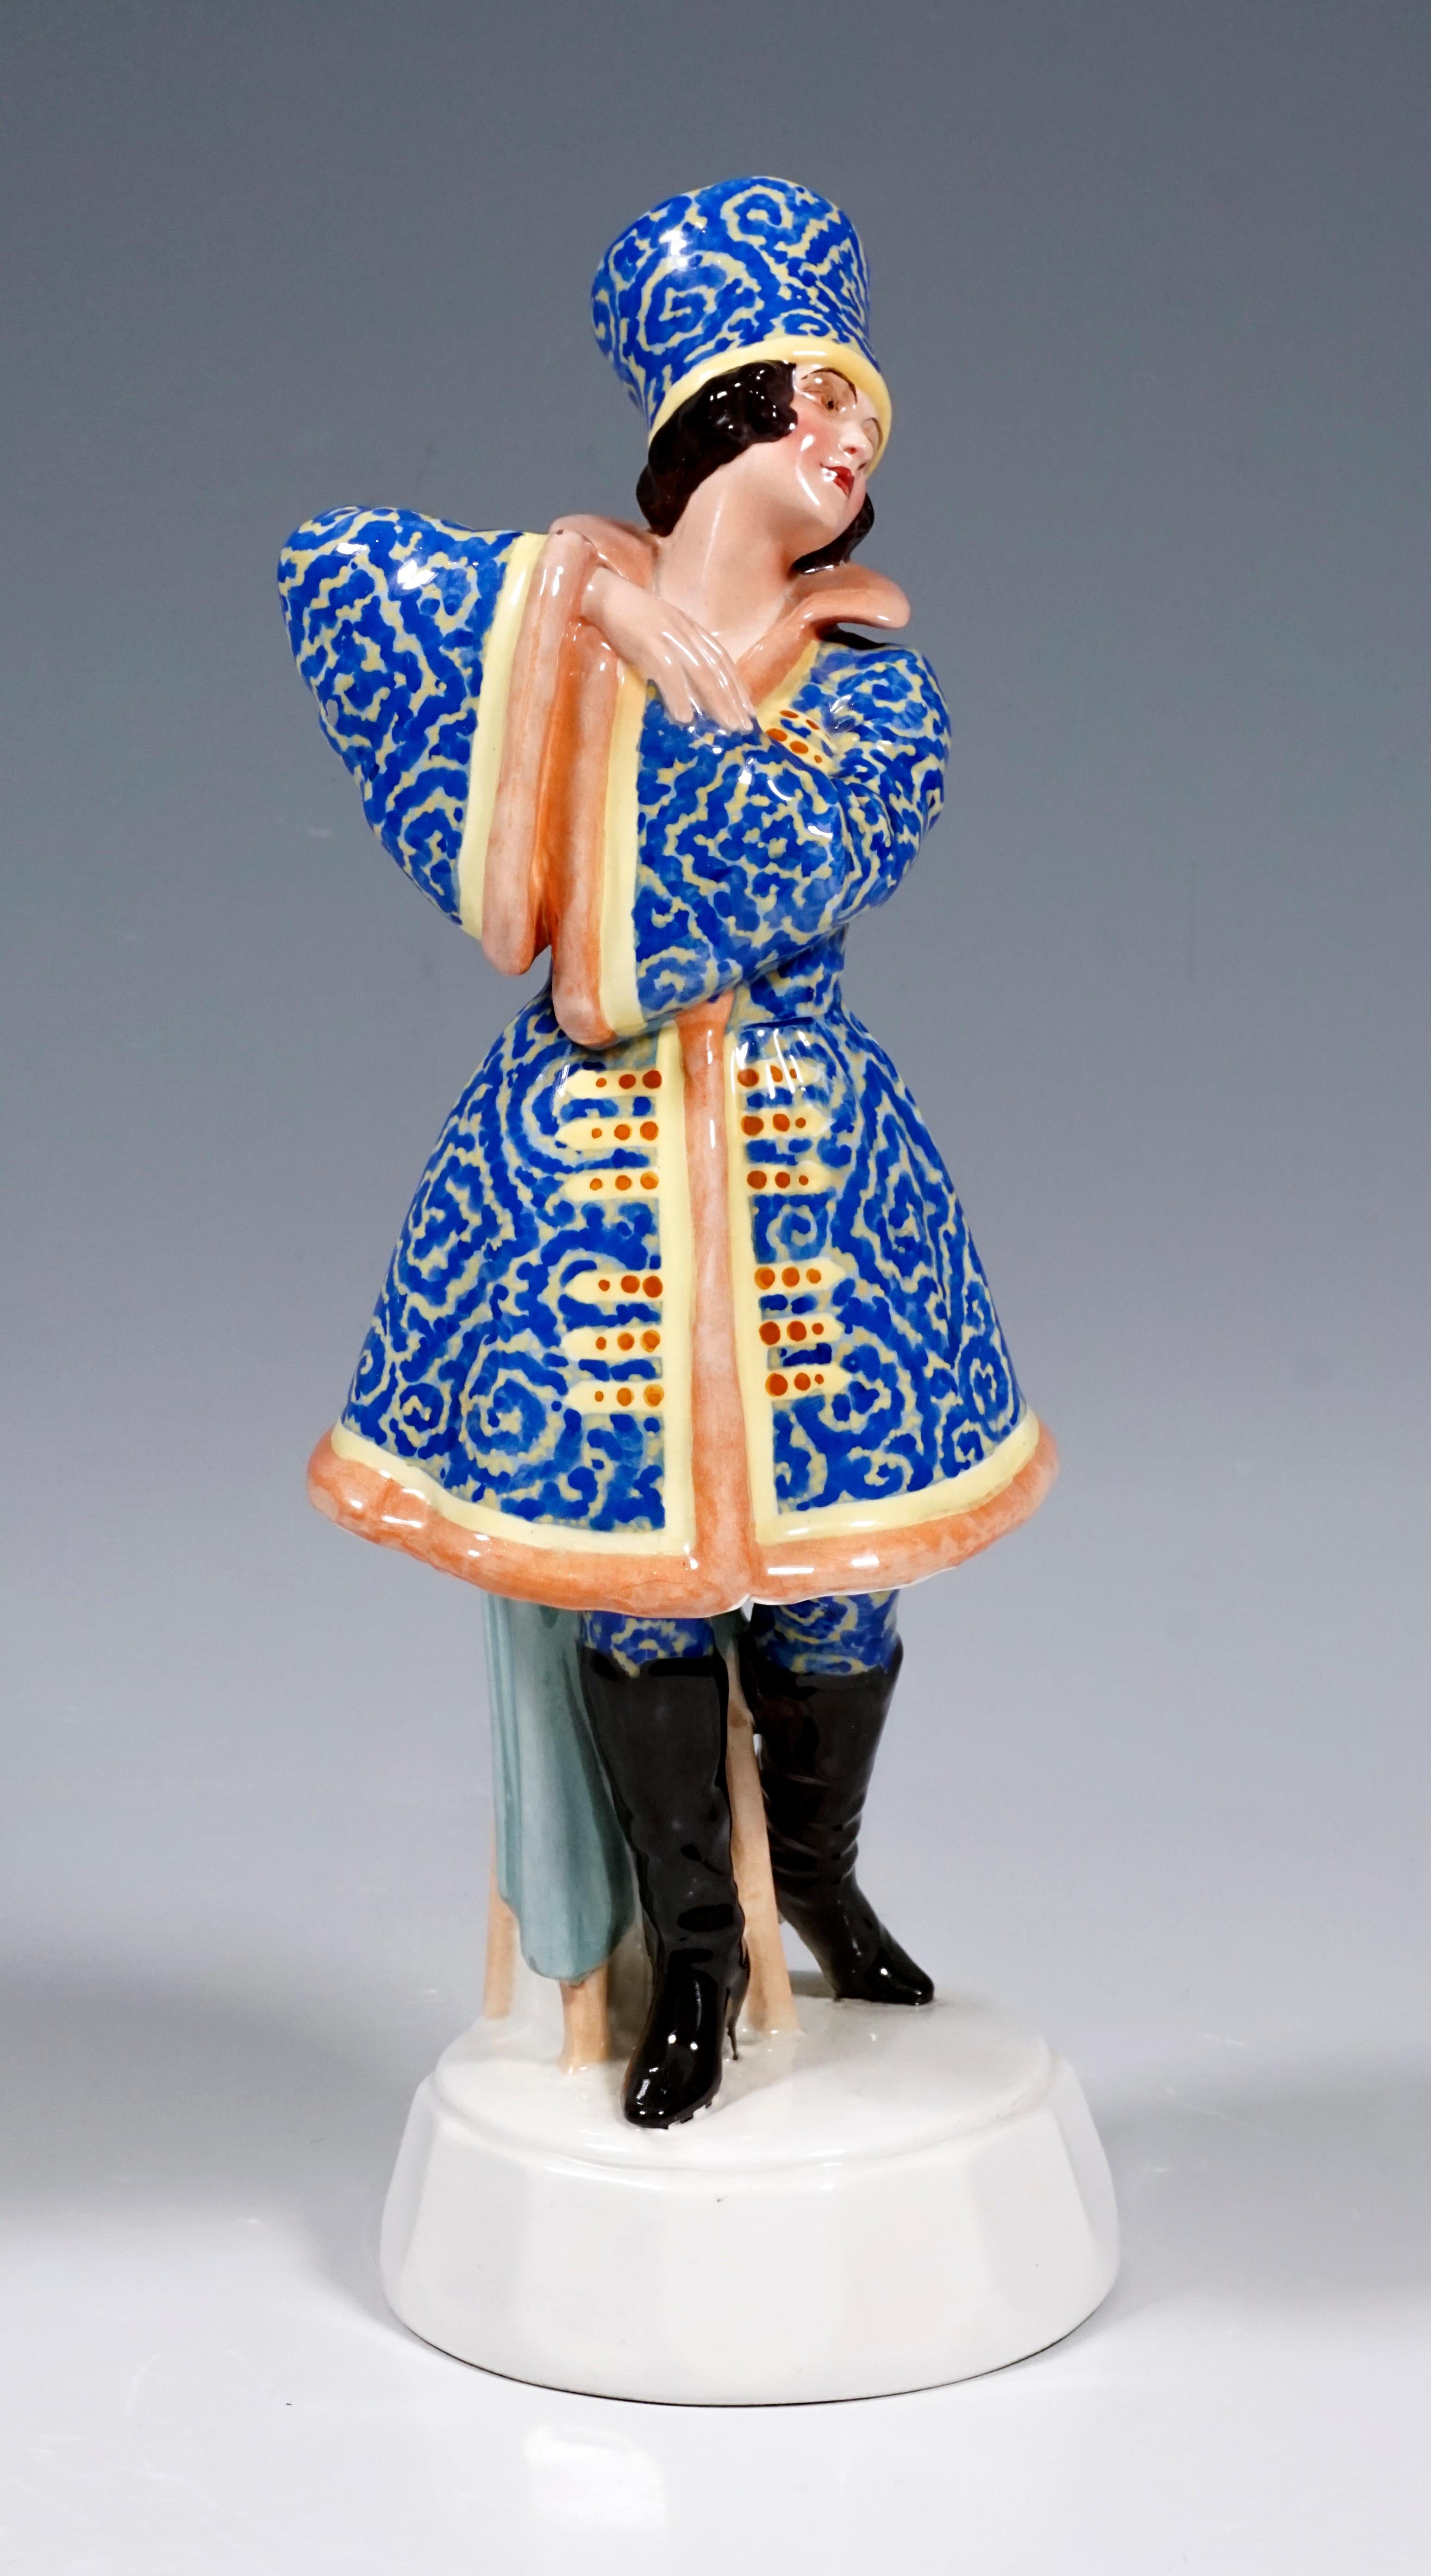 Sehr seltene Goldscheider Wien Figur aus den 1920er Jahren
Gezeigt wird eine stehende Tänzerin, die mit verschränkten und vor ihr erhobenen Armen zur Seite schaut. Die junge Dame trägt ein russisches Kostüm, das mit aufwendigen blauen Stickereien